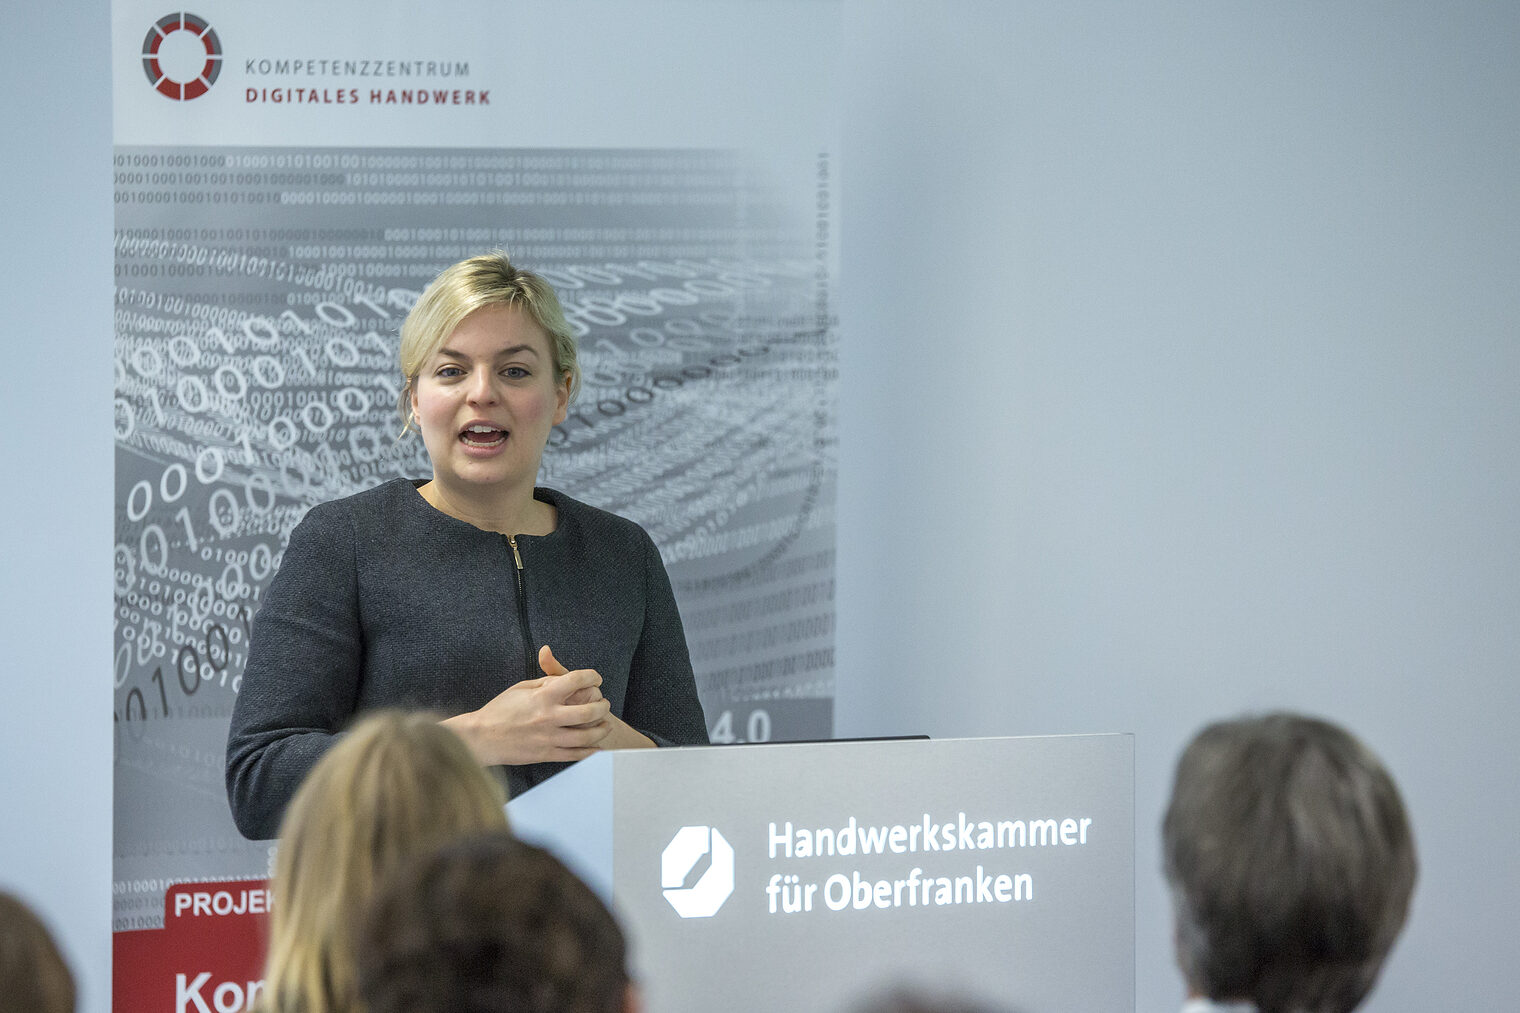 Bedankte sich für die Einblicke in die Praxis: Katharina Schulze, die Fraktionsvorsitzende der bayerischen Grünen im Landtag, im Showroom des Kompetenzzentrums Digitales Handwerk. 